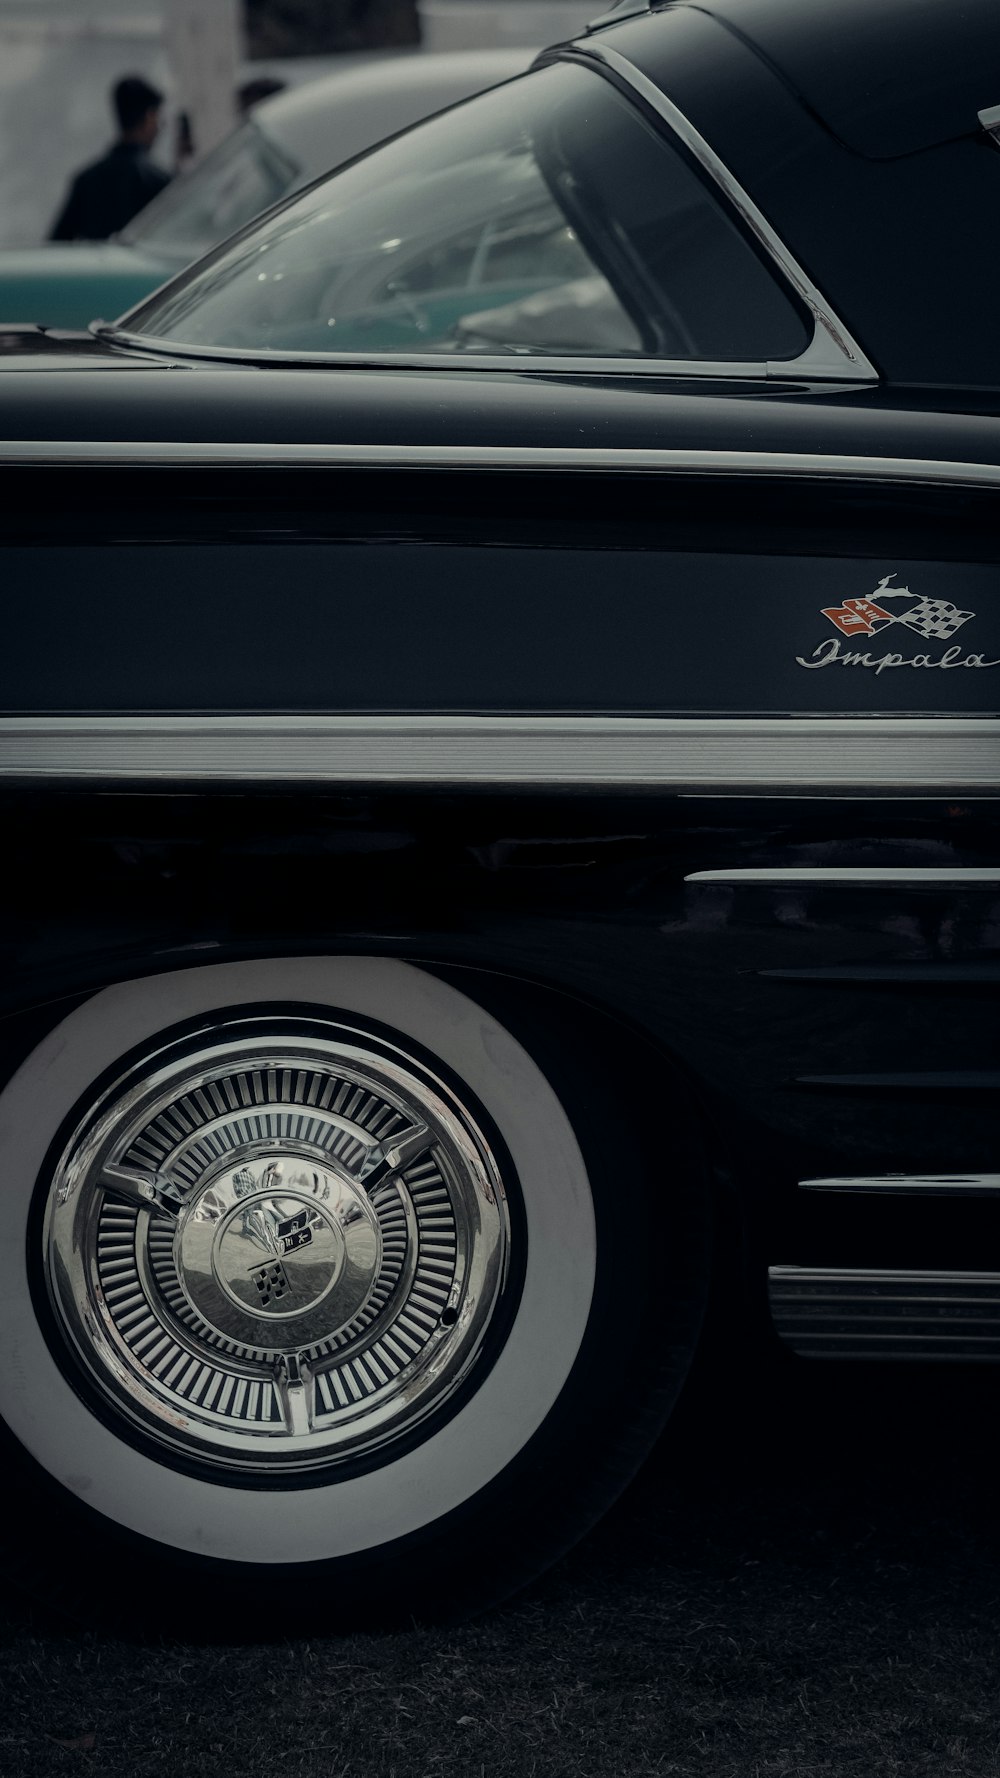 a close up of a black car with chrome rims